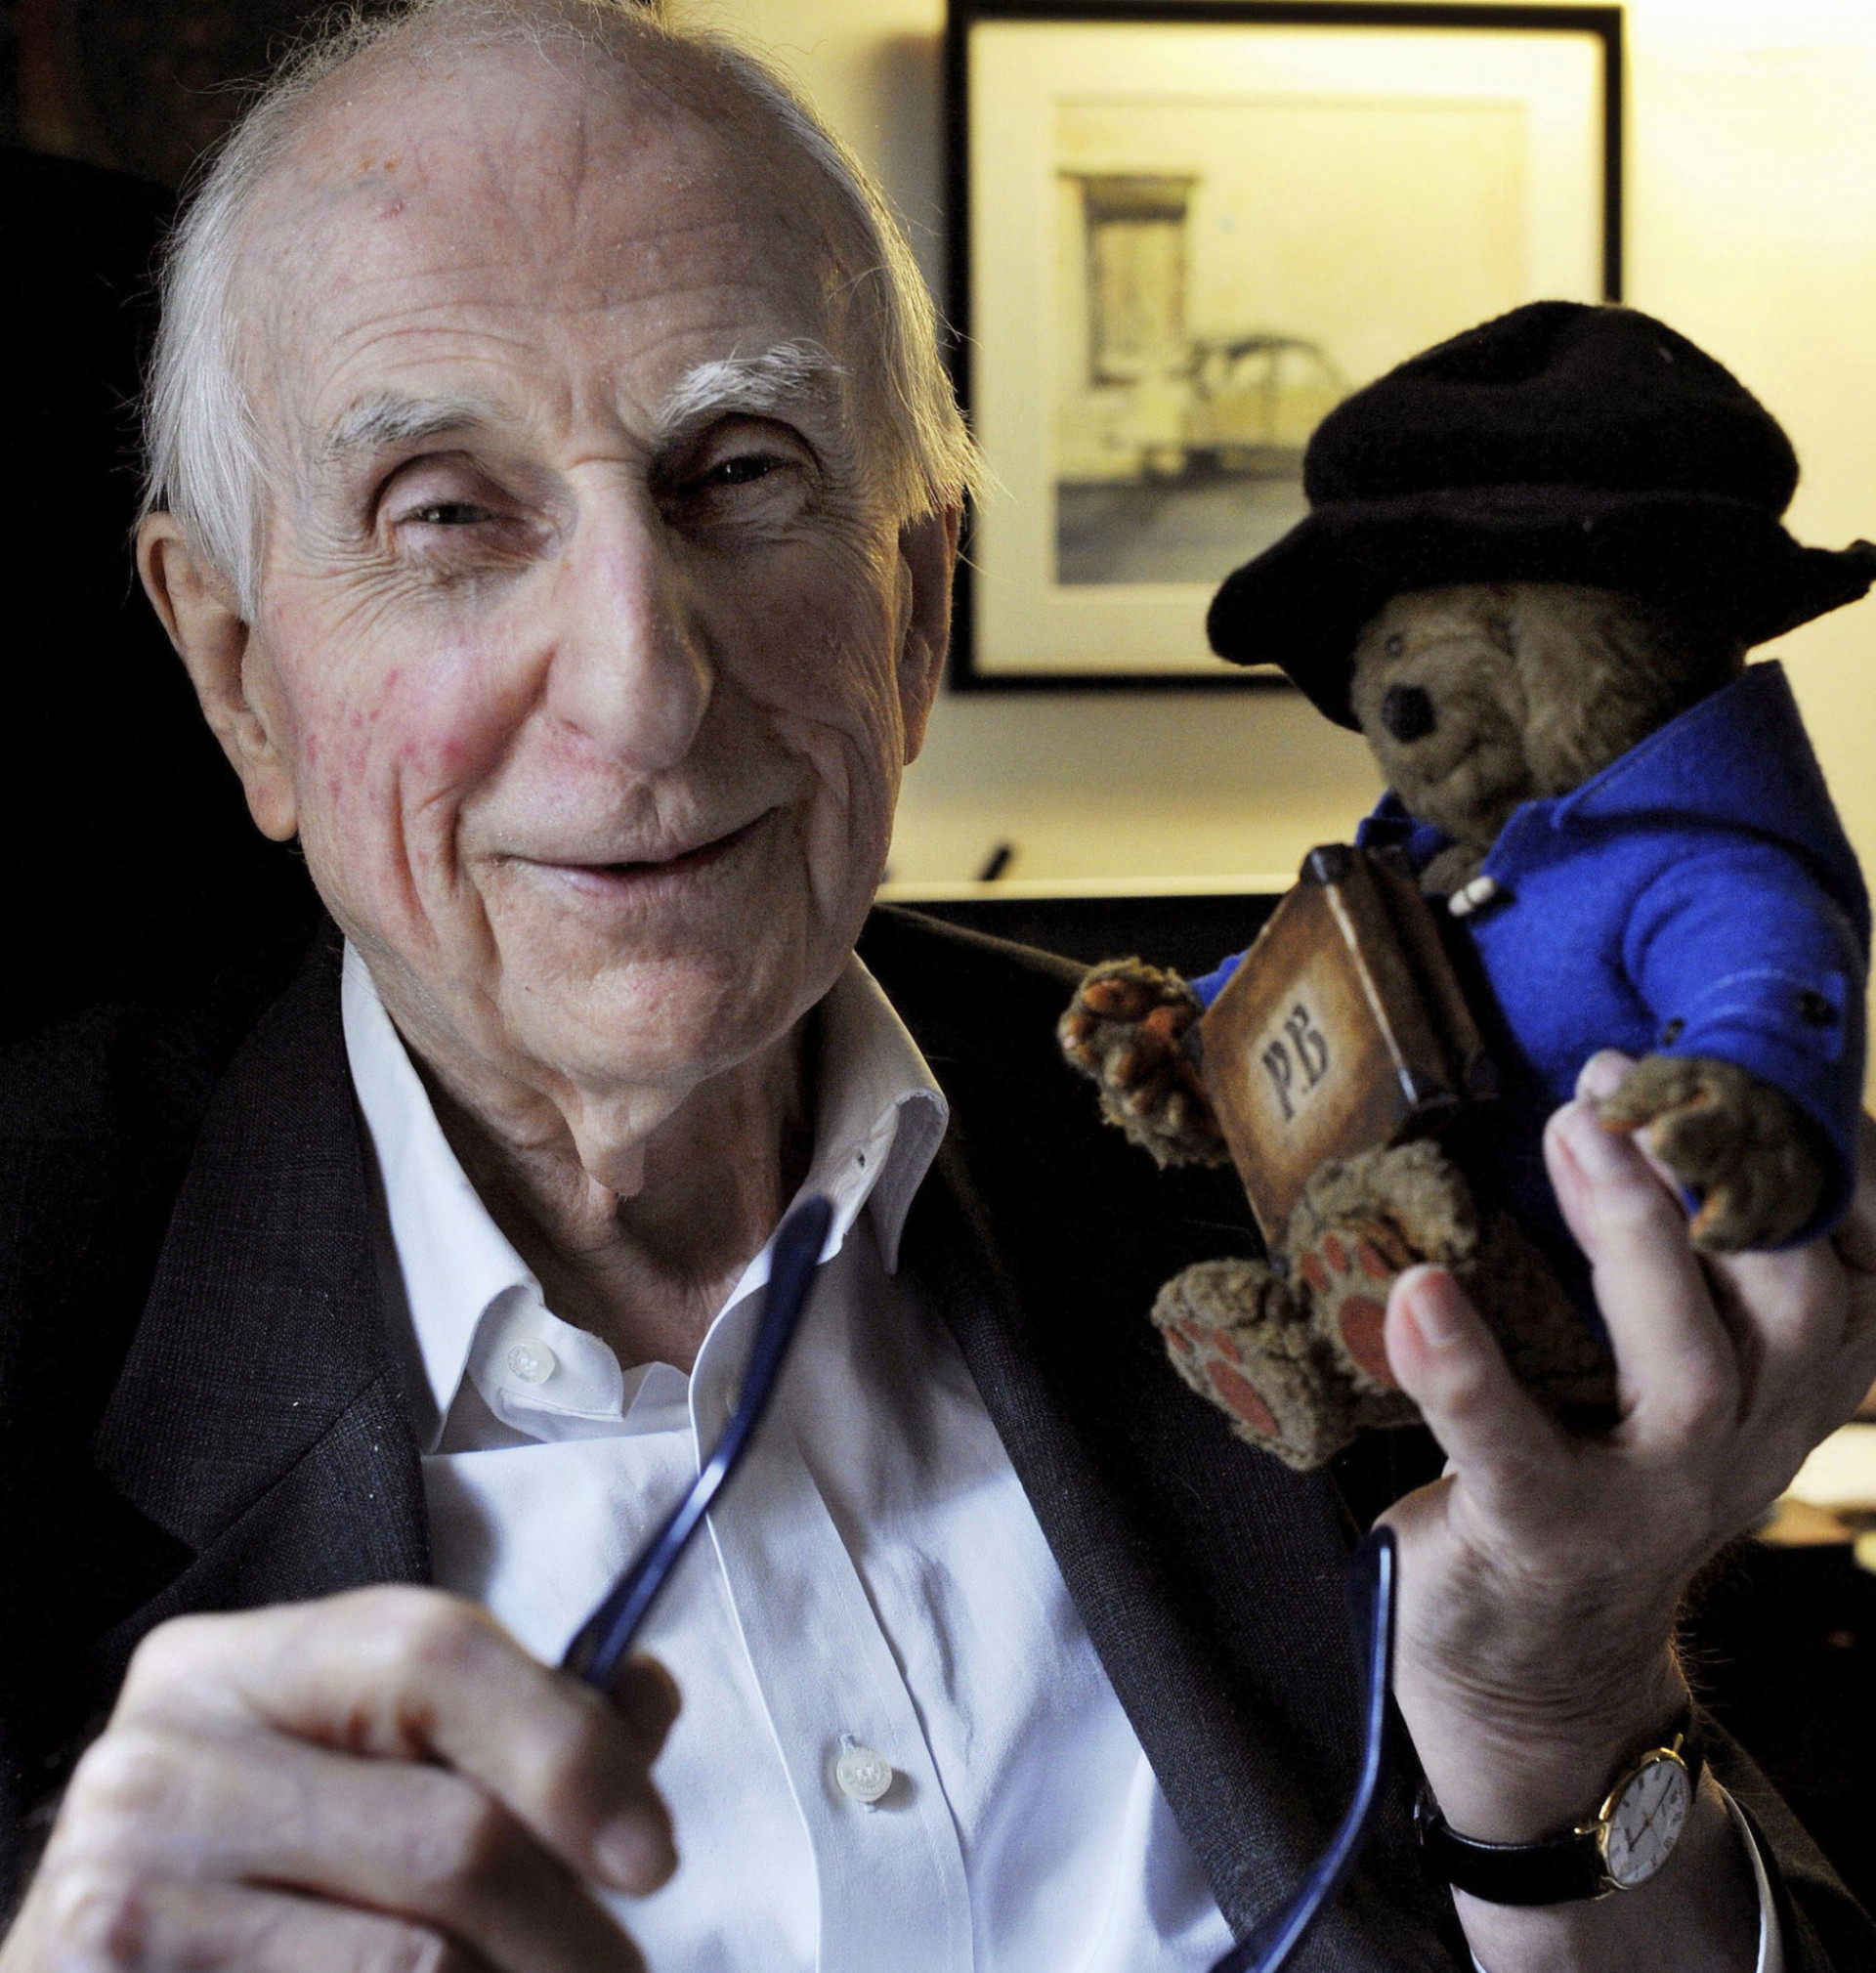 Na archívnej snímke z 12. júna 2015 v Londýne Michael Bond pózuje s hračkou medvedíka Paddington. Vo veku 91 rokov zomrel v utorok  27. júna 2017 britský spisovateľ Michael Bond, ktorý pre deti napísal úspešnú sériu kníh o medvedíkovi Paddingtonovi. S odvolaním sa na vydavateľstvo HarperCollins Children's Books o tom dnes informovala agentúra AP.